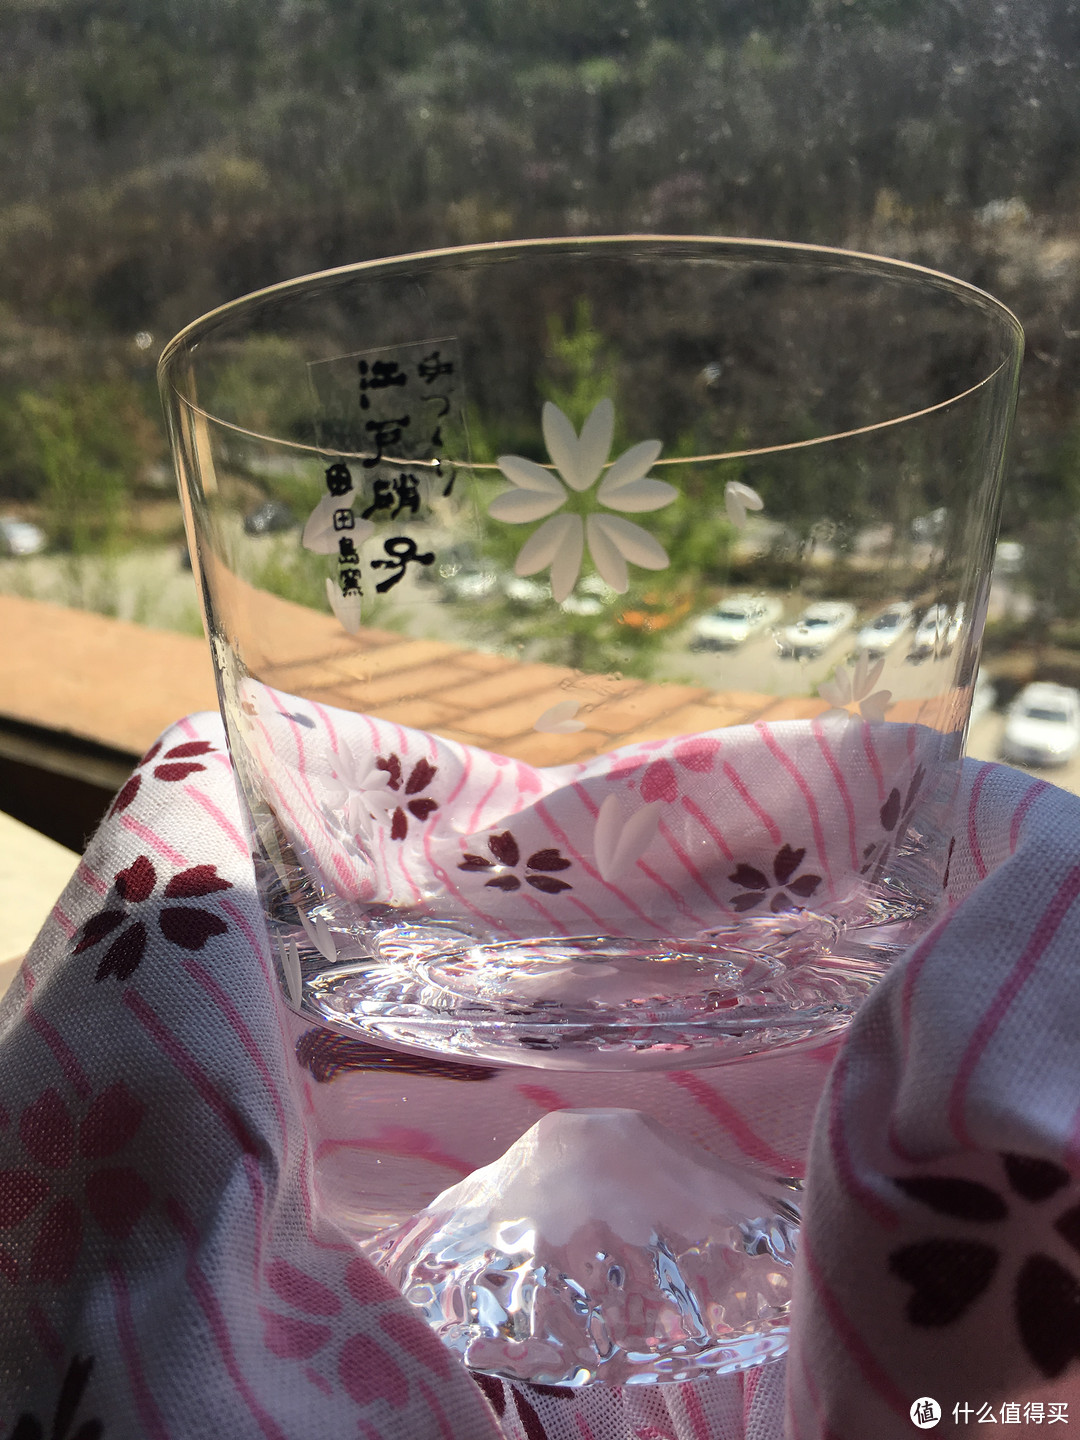 飞舞的樱花瓣,落雪的富士山